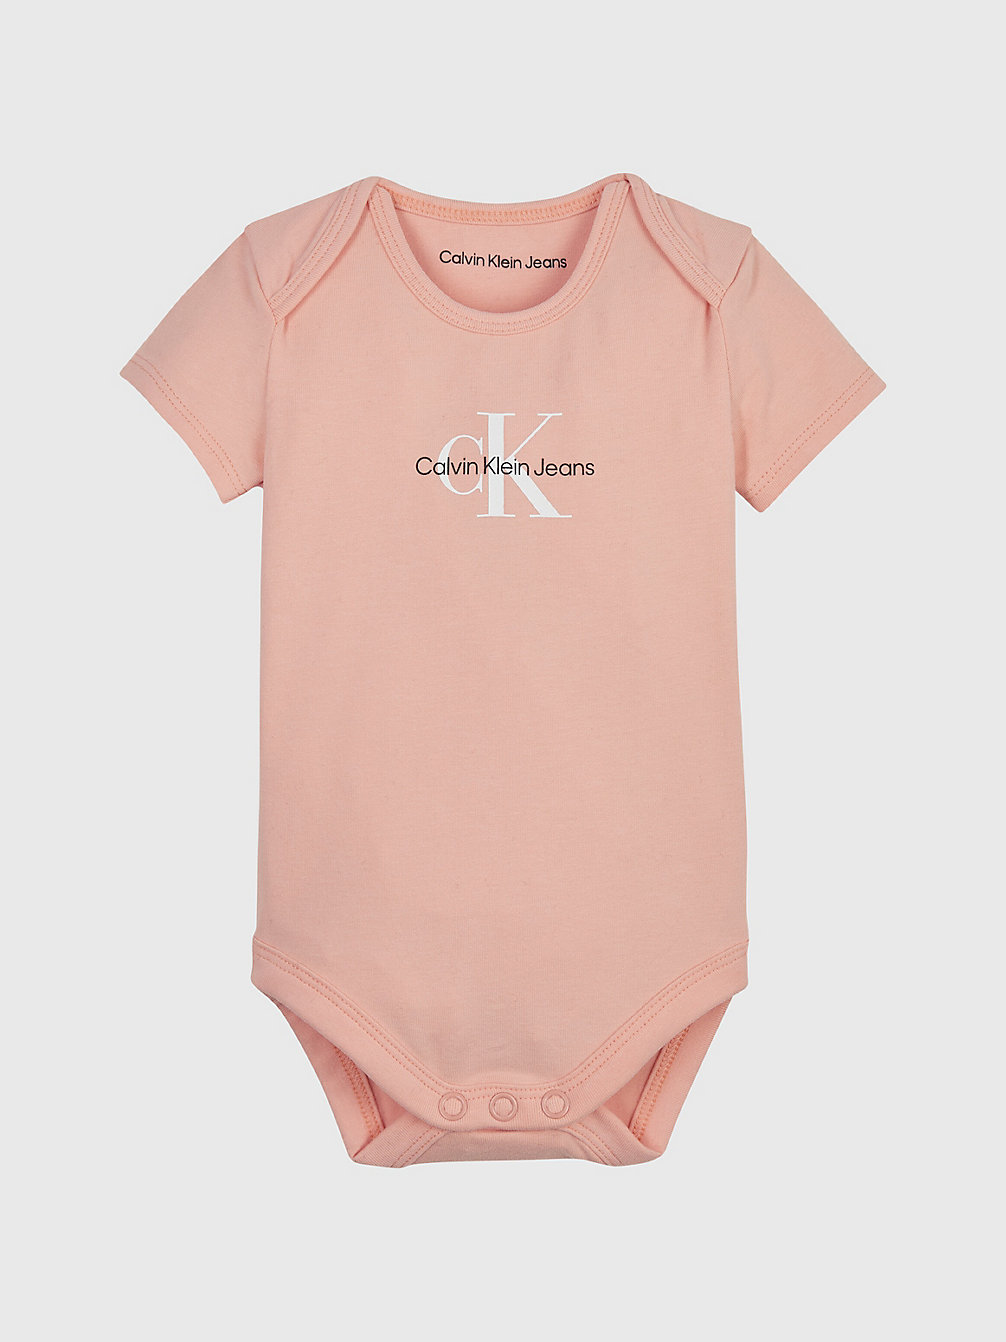 FRESH CANTALOUPE Baby-Body Mit Logo undefined newborn Calvin Klein